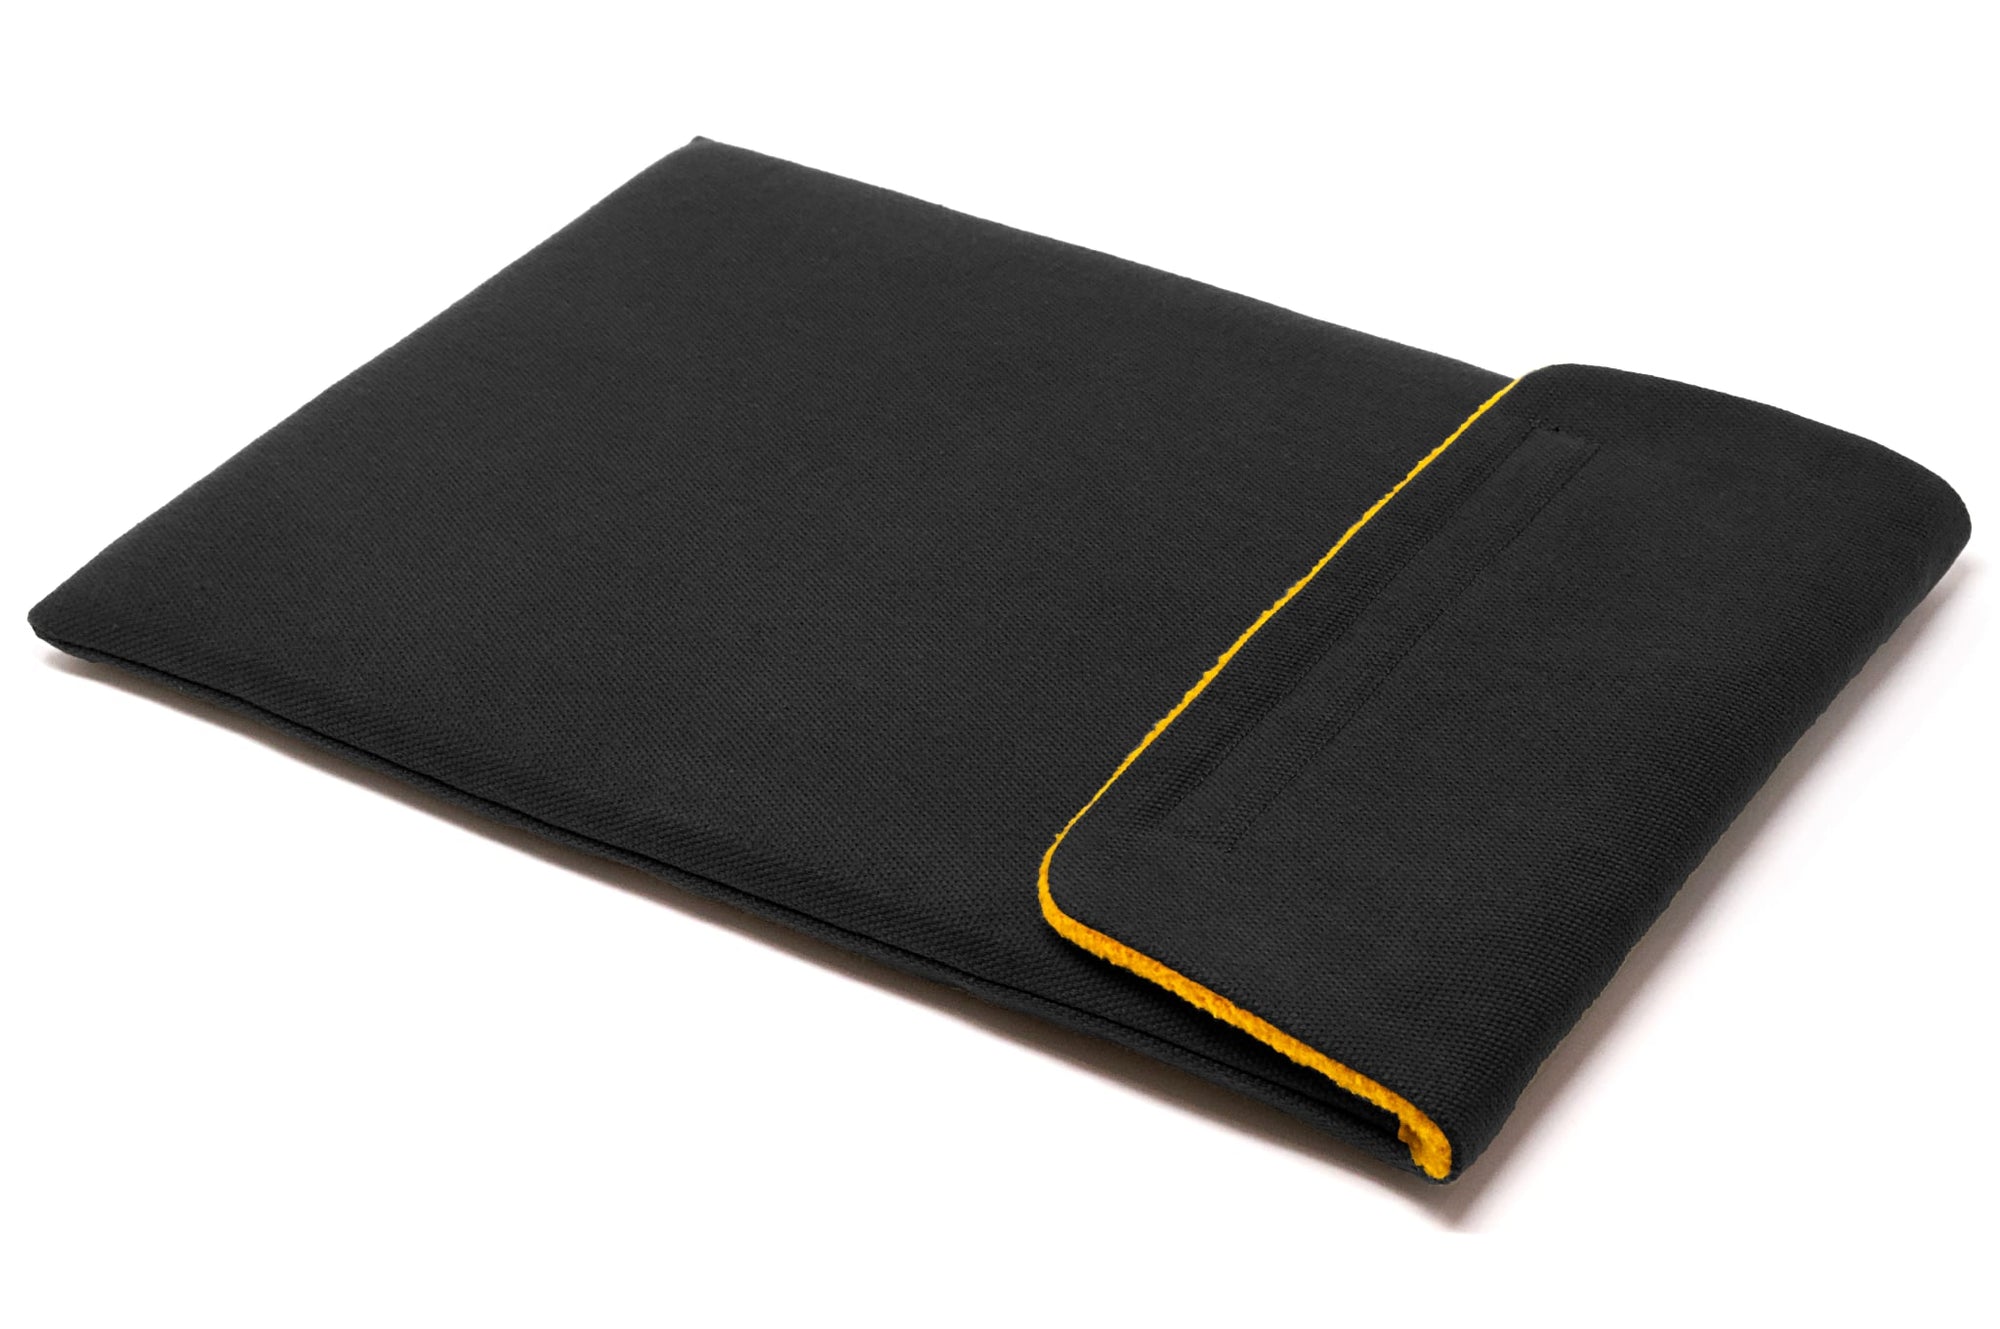 Framework Laptop 13 Sleeve Case - Waxed Canvas Black